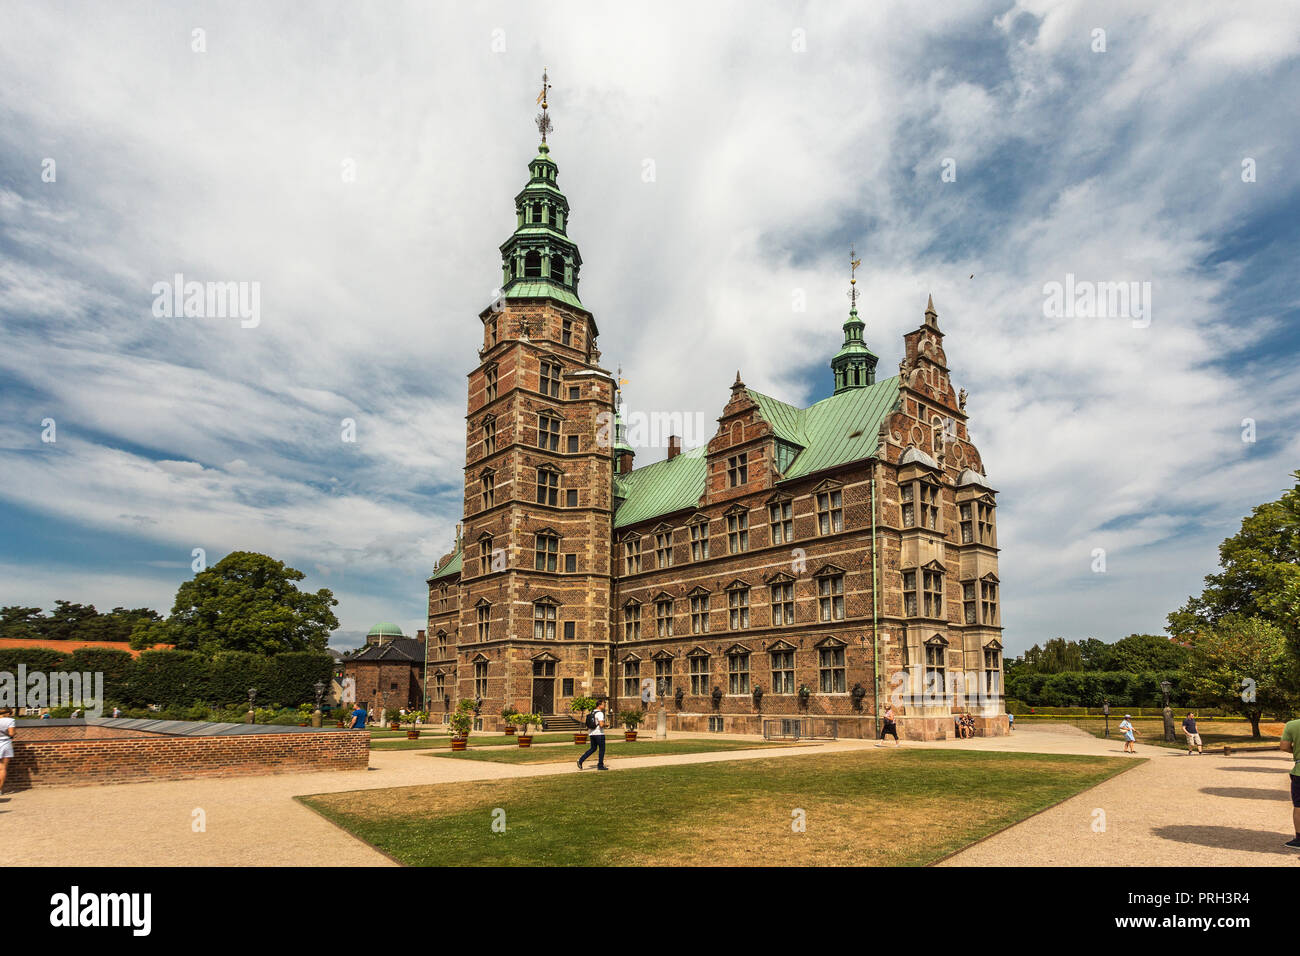 Rosenborg Castle in Copenhagen Stock Photo